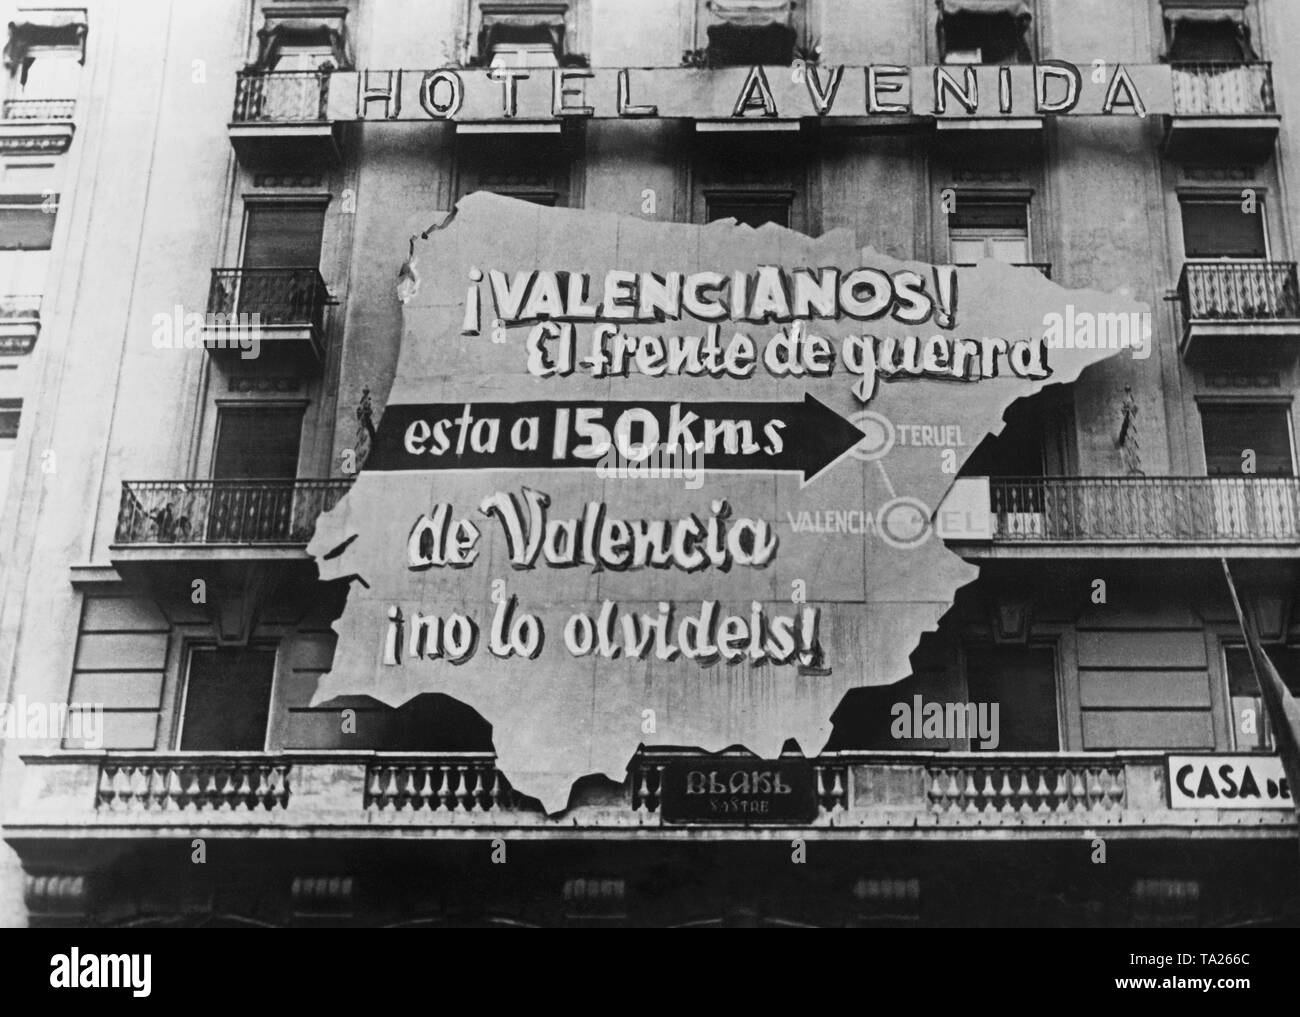 Foto einer Propaganda Plakat der republikanischen Regierung in Form einer Karte von Spanien auf der Fassade des Hotel Avenida in Valencia. Inschrift: Valencia. Die Schlacht ist nur 150 km von Valencia entfernt. Tun sie es nicht vergessen! Teruel gekennzeichnet ist. Stockfoto